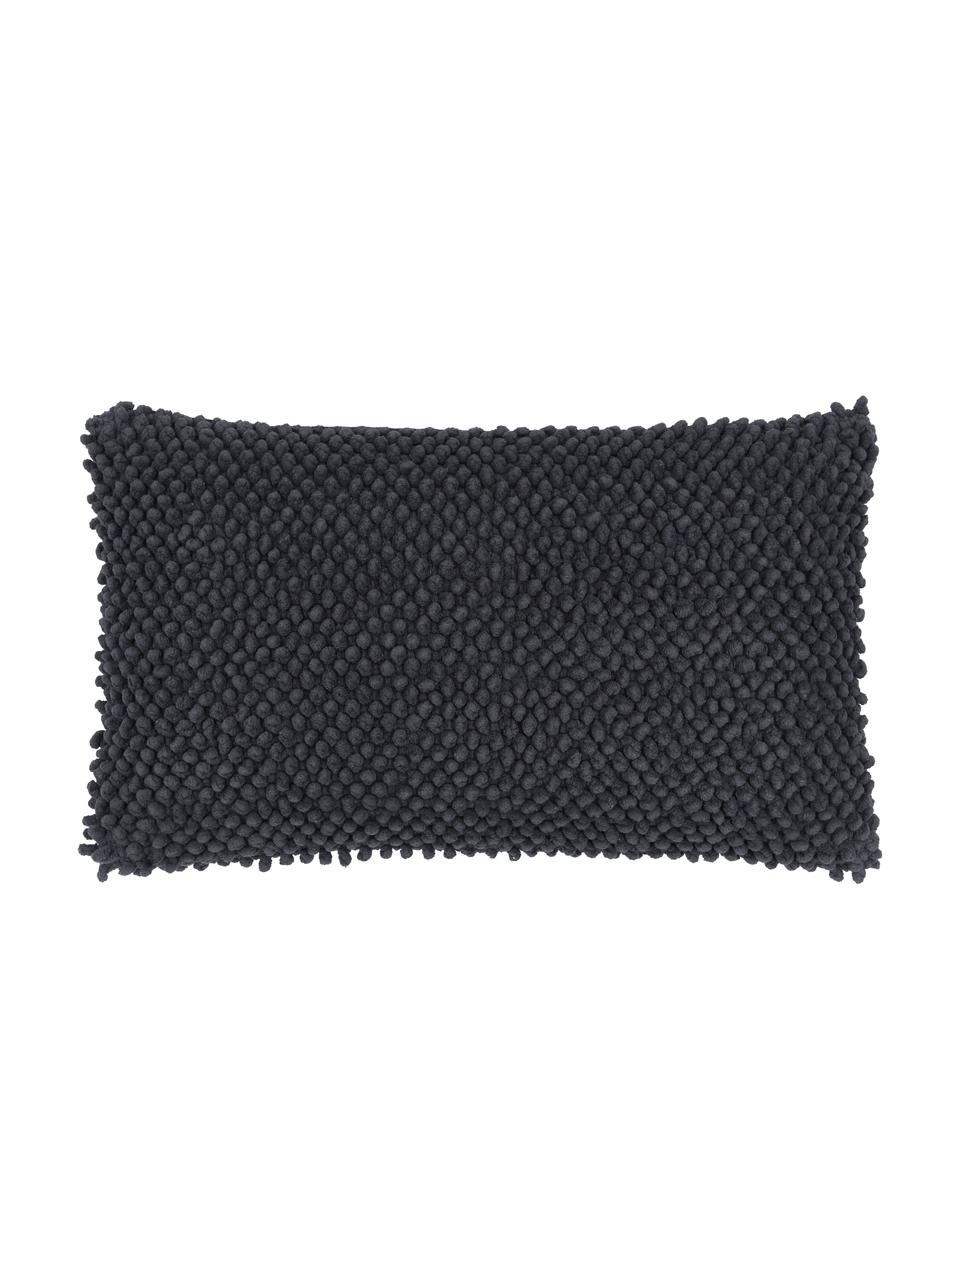 Kissenhülle Indi mit strukturierter Oberfläche in Dunkelgrau, 100% Baumwolle, Dunkelgrau, 30 x 50 cm